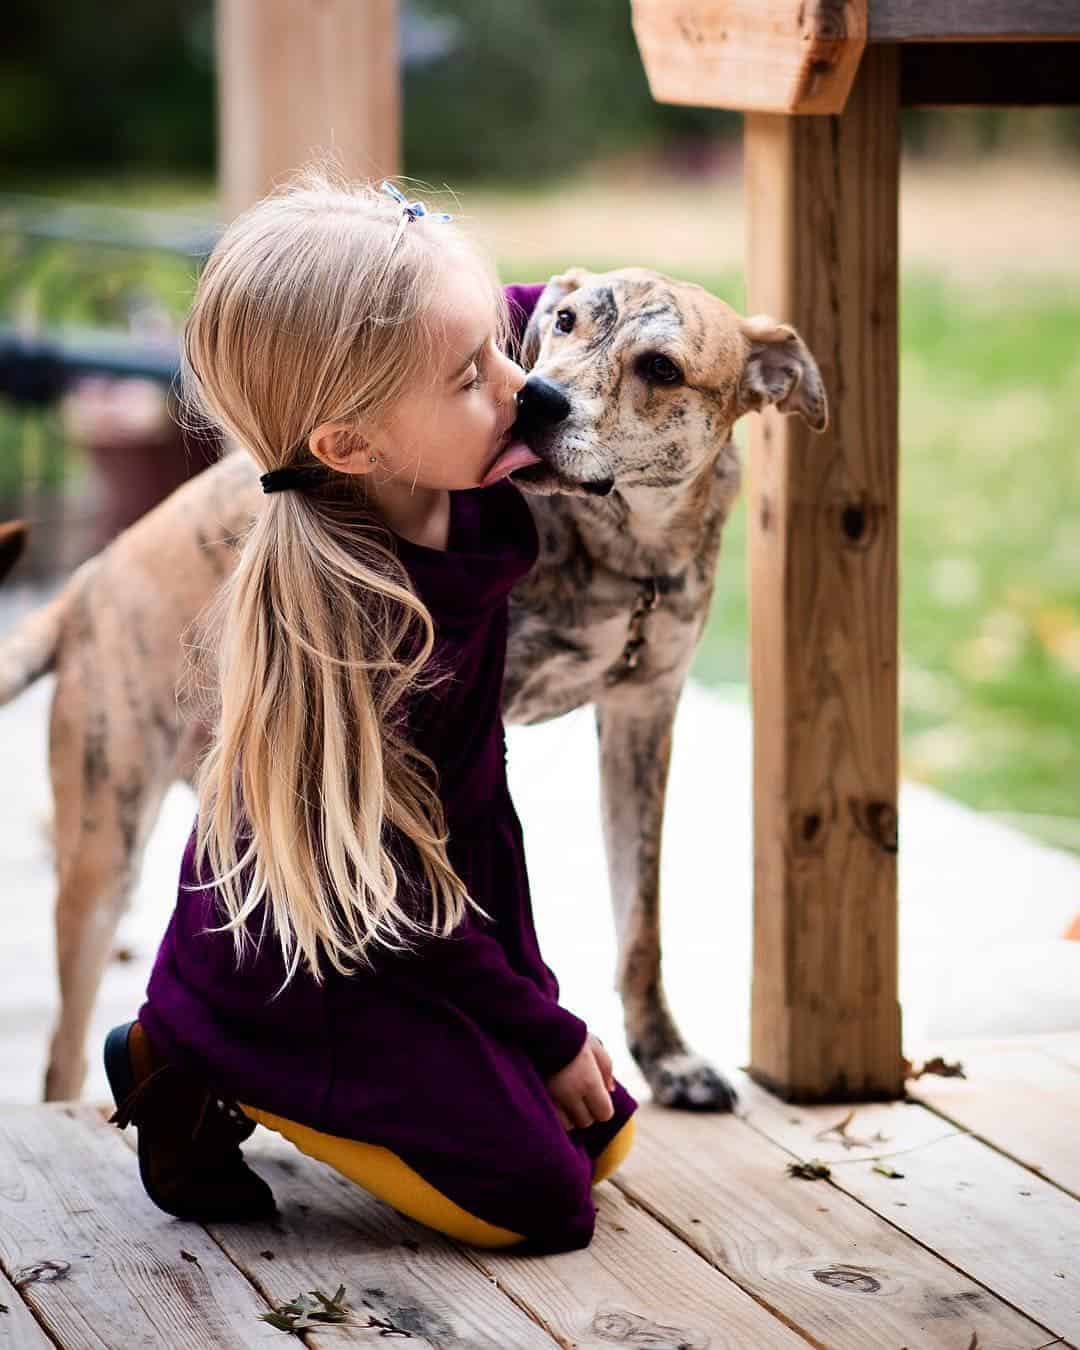 20 Benefits of Raising Kids Around Animals • RUN WILD MY CHILD